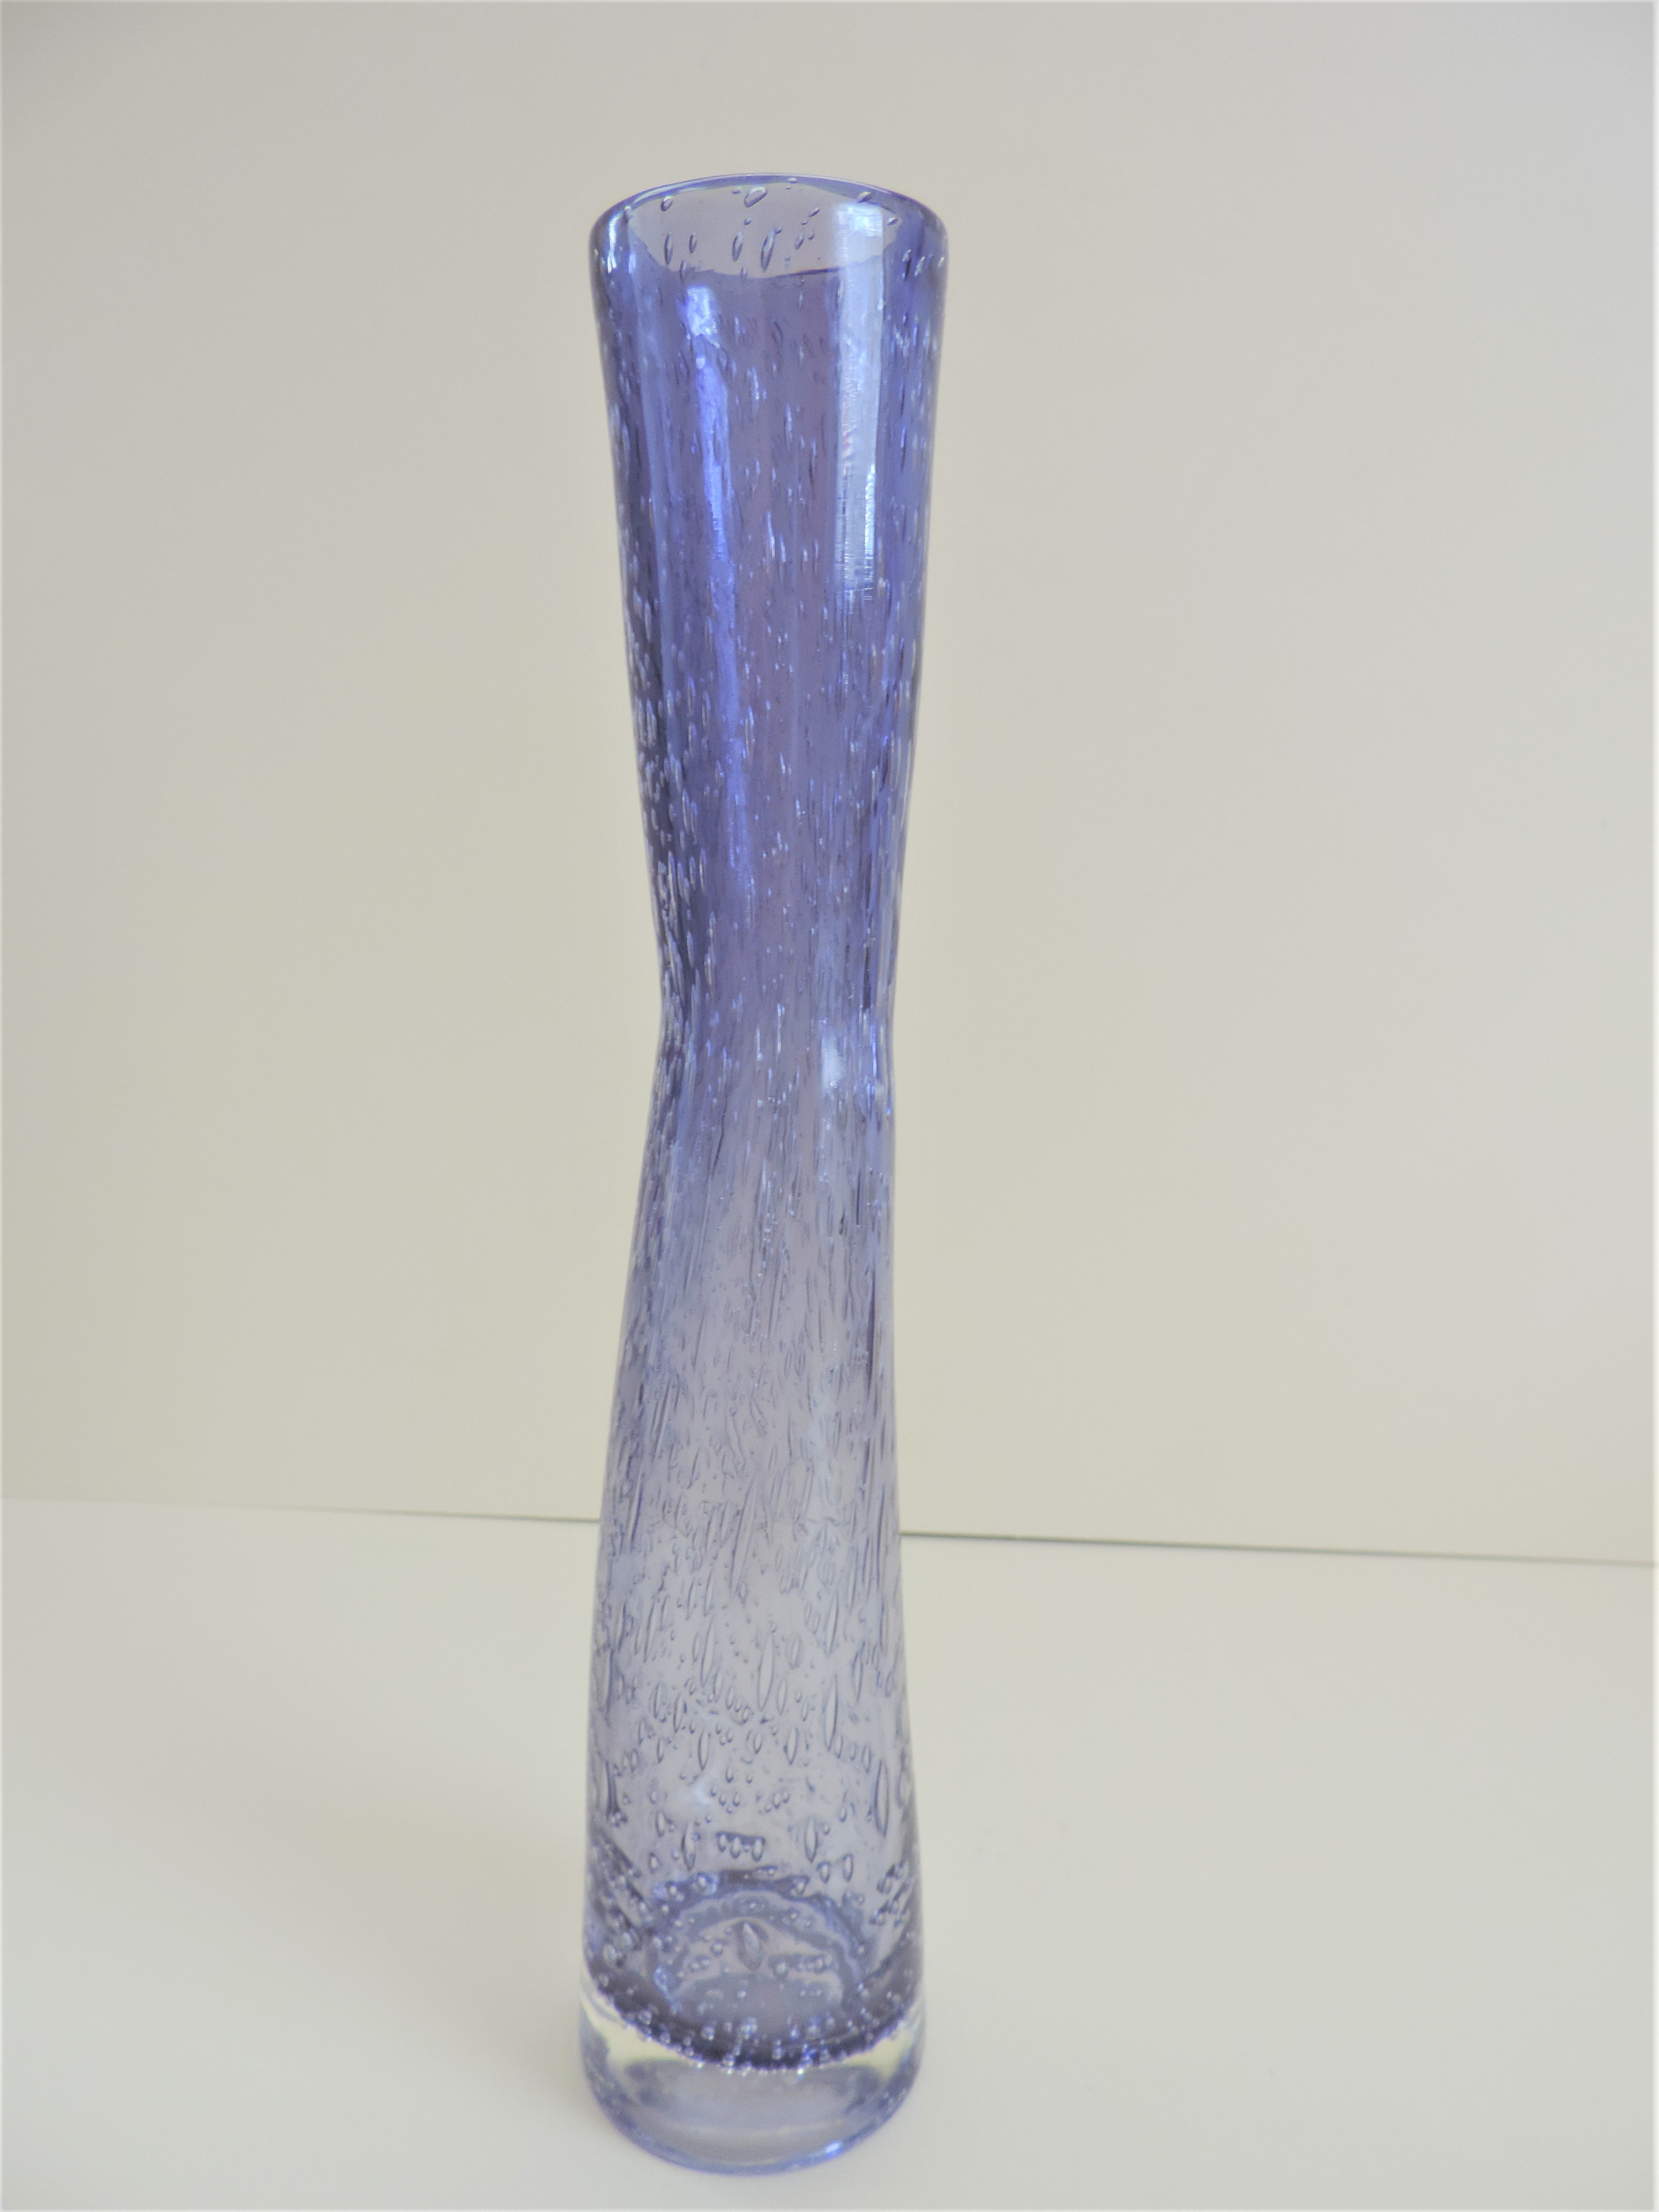 Wonky Art Glass Vase 29cm tall